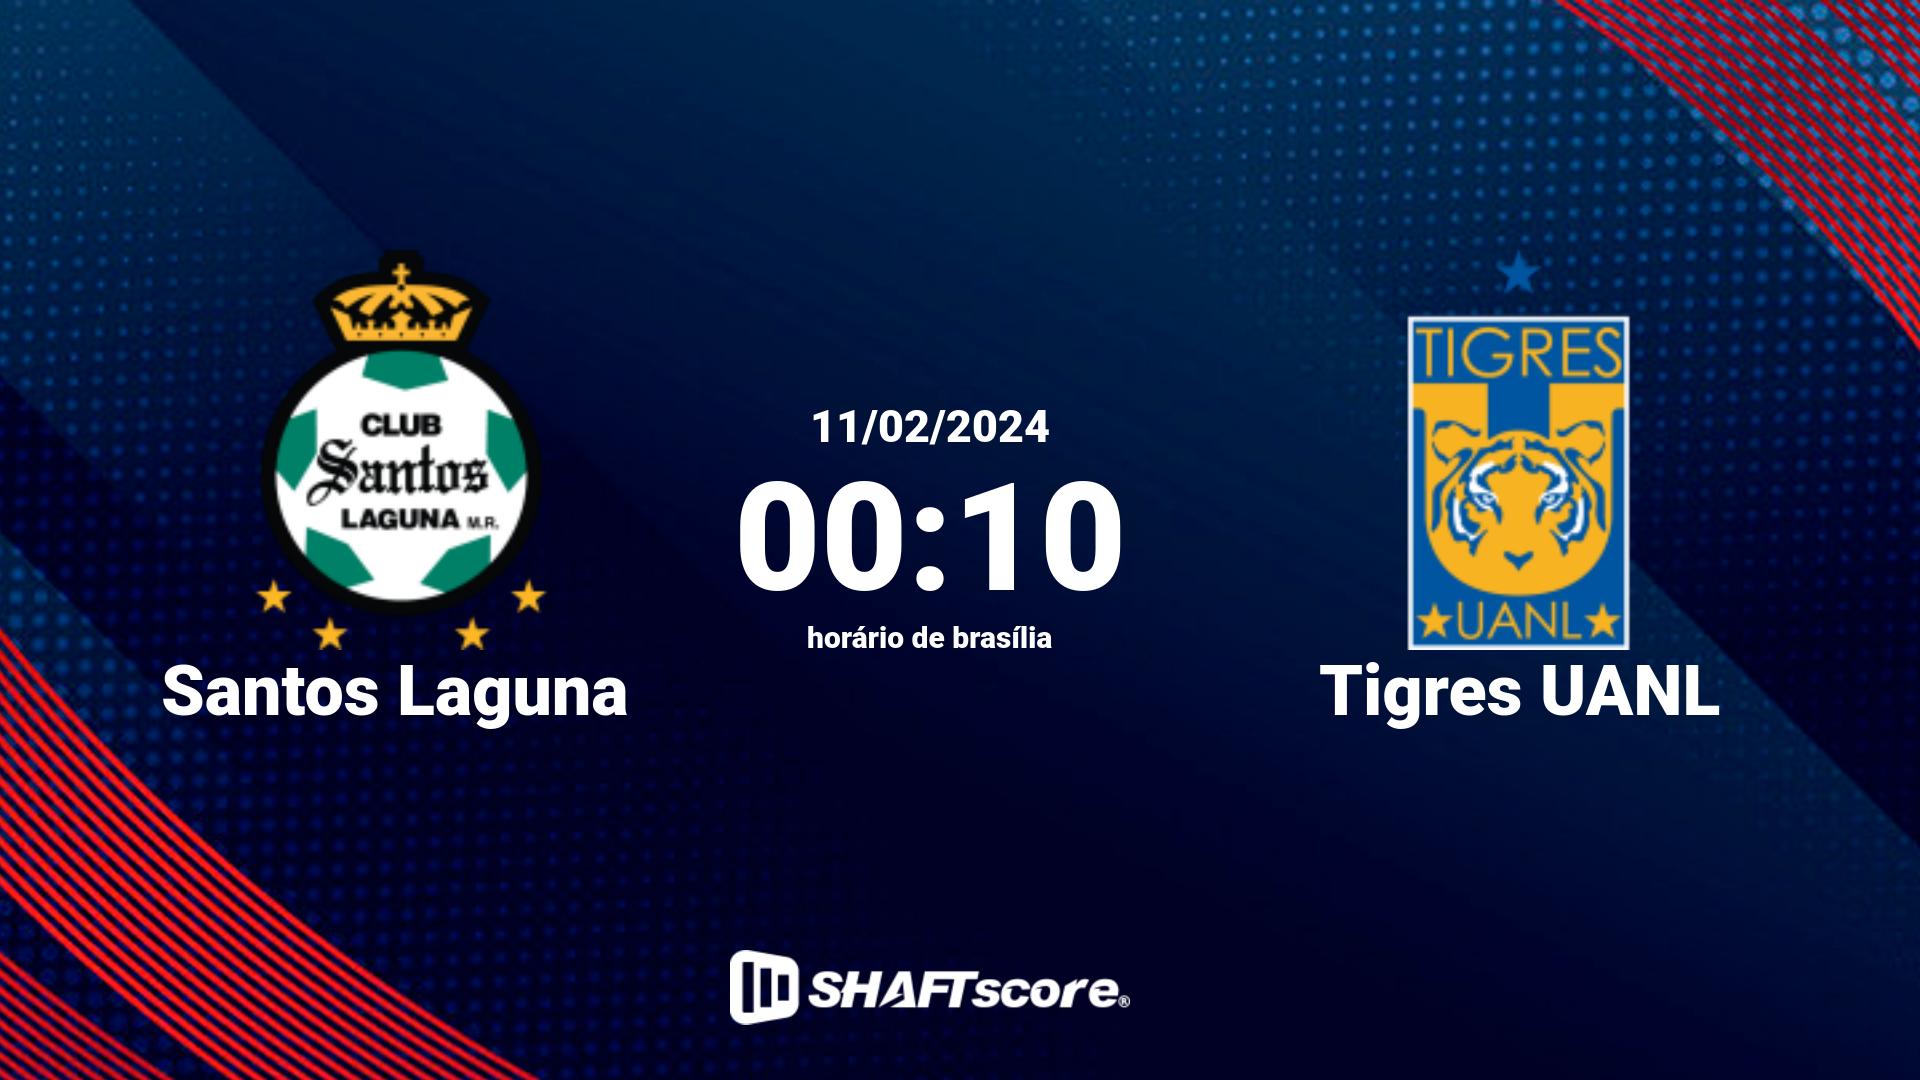 Estatísticas do jogo Santos Laguna vs Tigres UANL 11.02 00:10